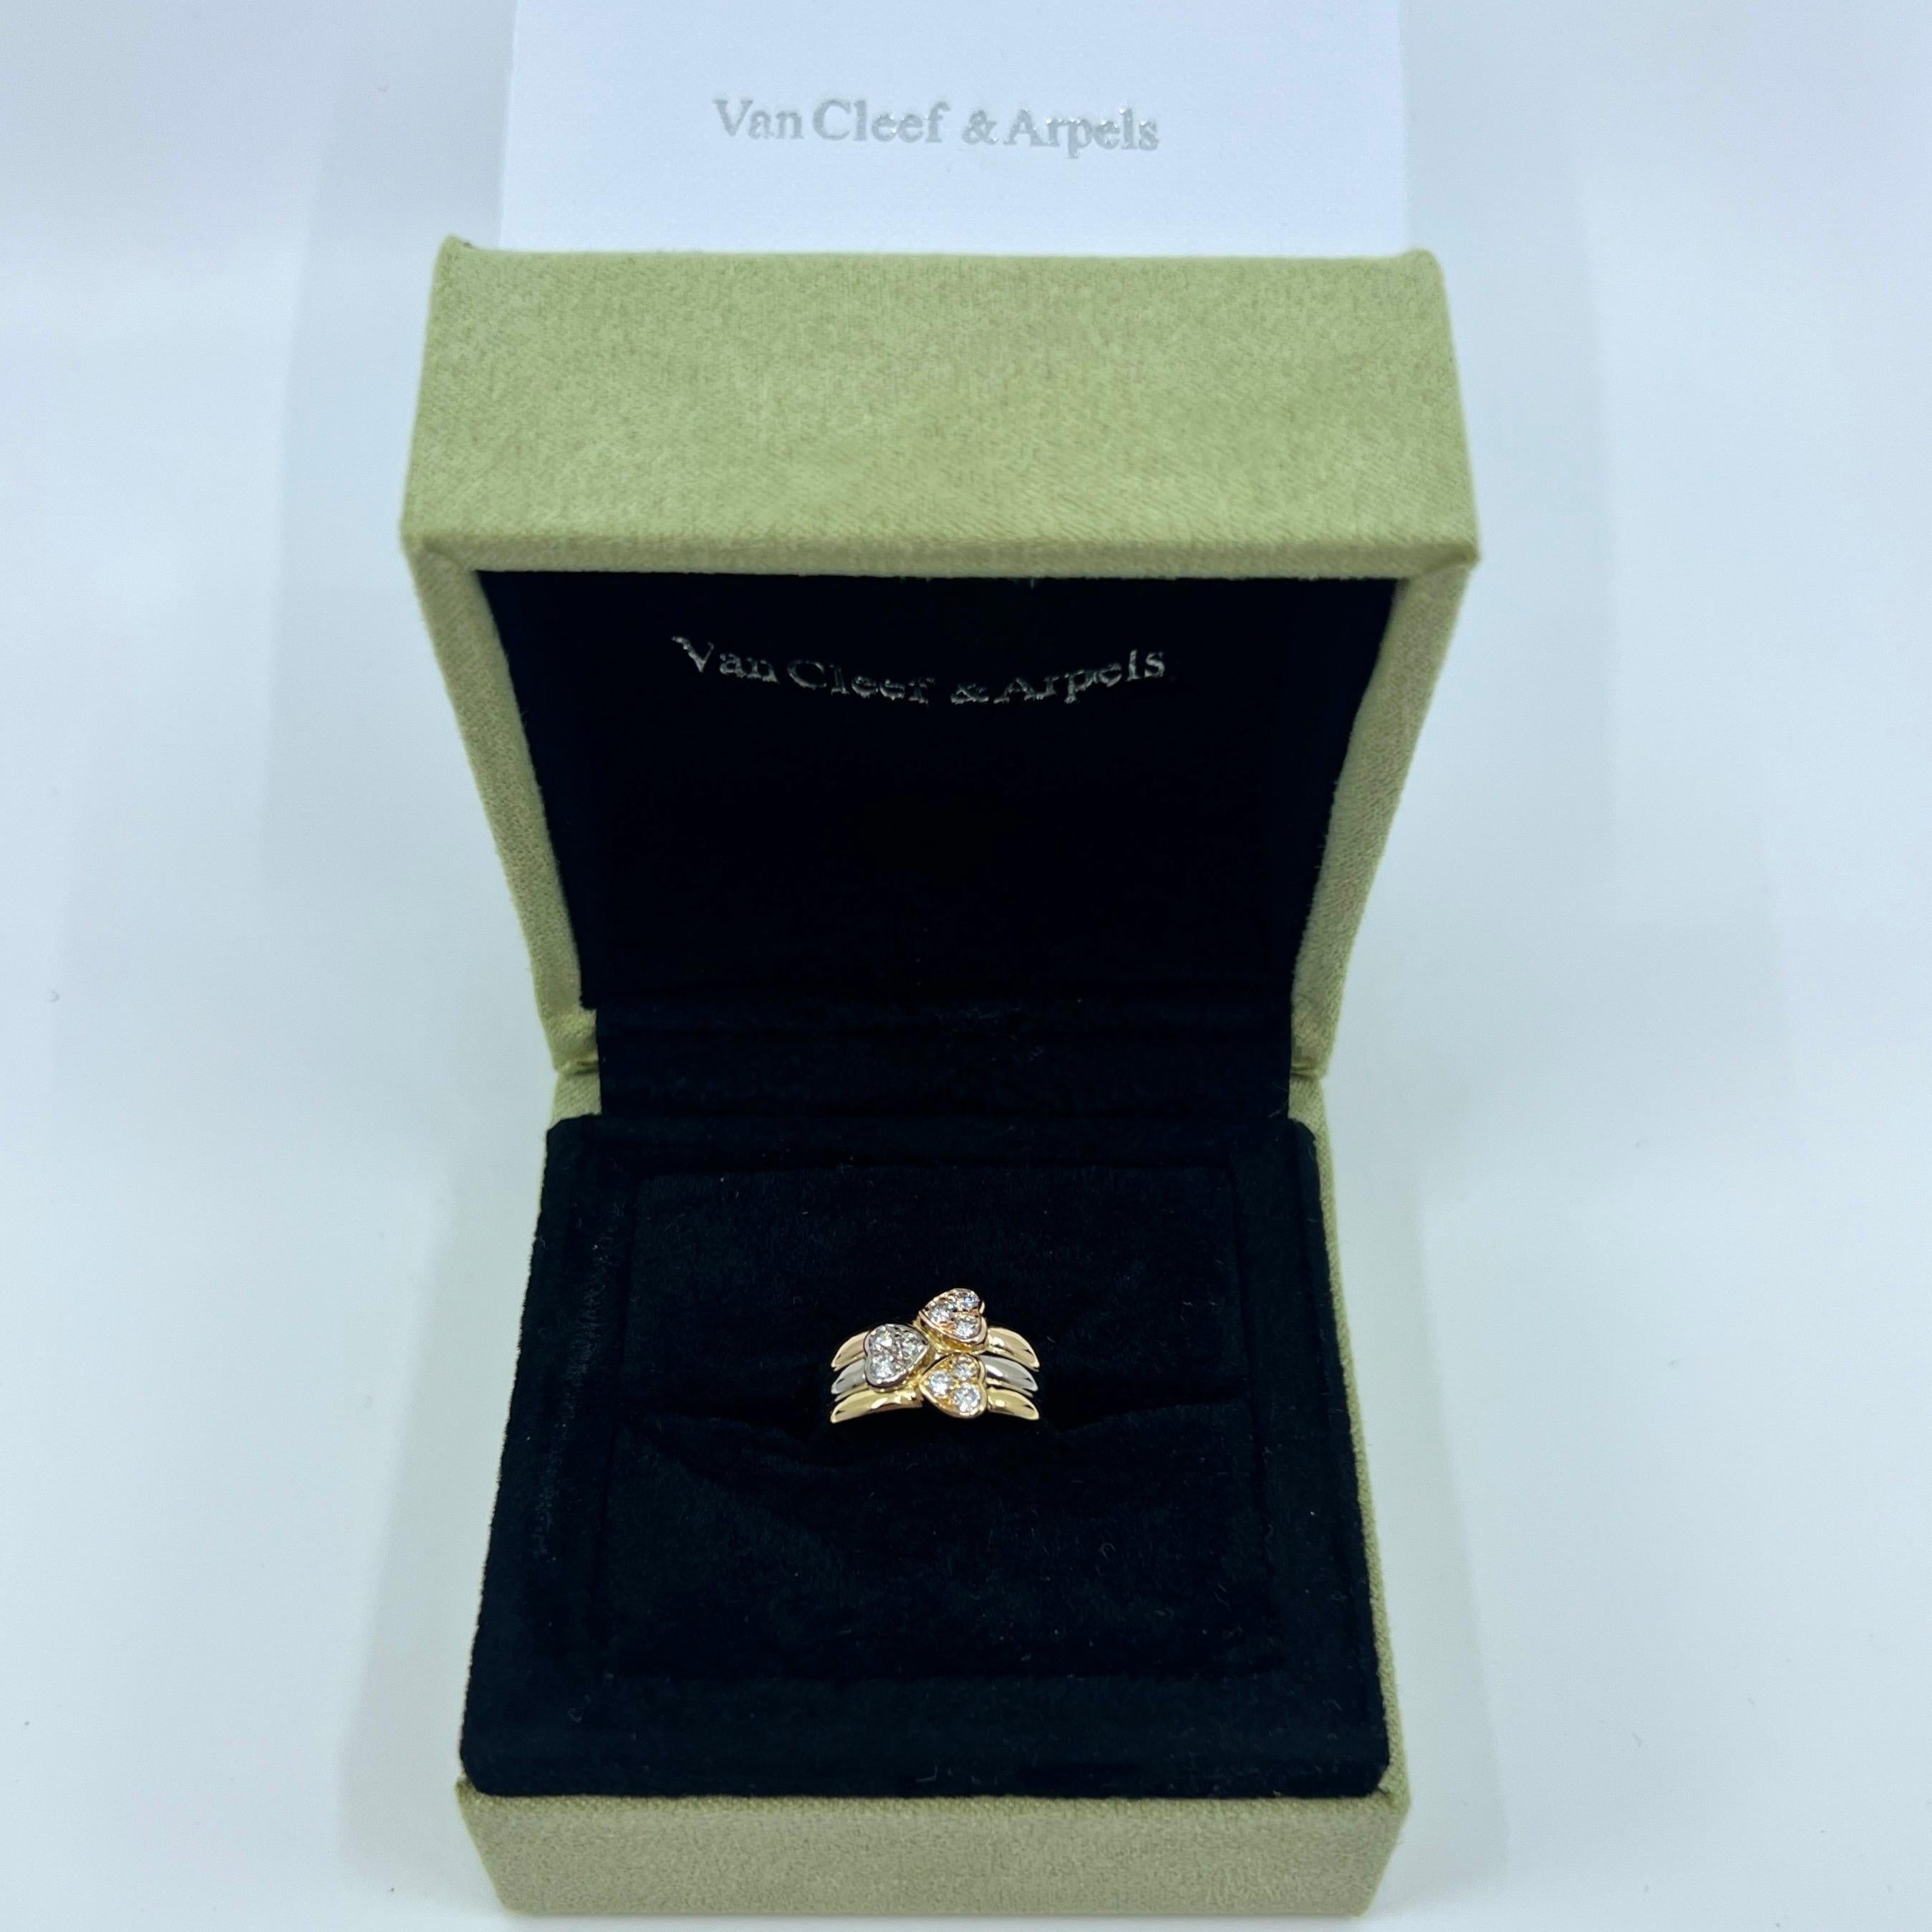 Van Cleef & Arpels Diamant Herz 18k Multi Tone/Tri Colour Gold Band Ring.

Vintage VCA Ring mit einem diamantbesetzten Herz aus Gelb-, Weiß- und Roségold.
Dieser Ring besteht aus 3 Herzen, jedes besetzt mit 3 Diamanten in einem anderen 18-karätigen